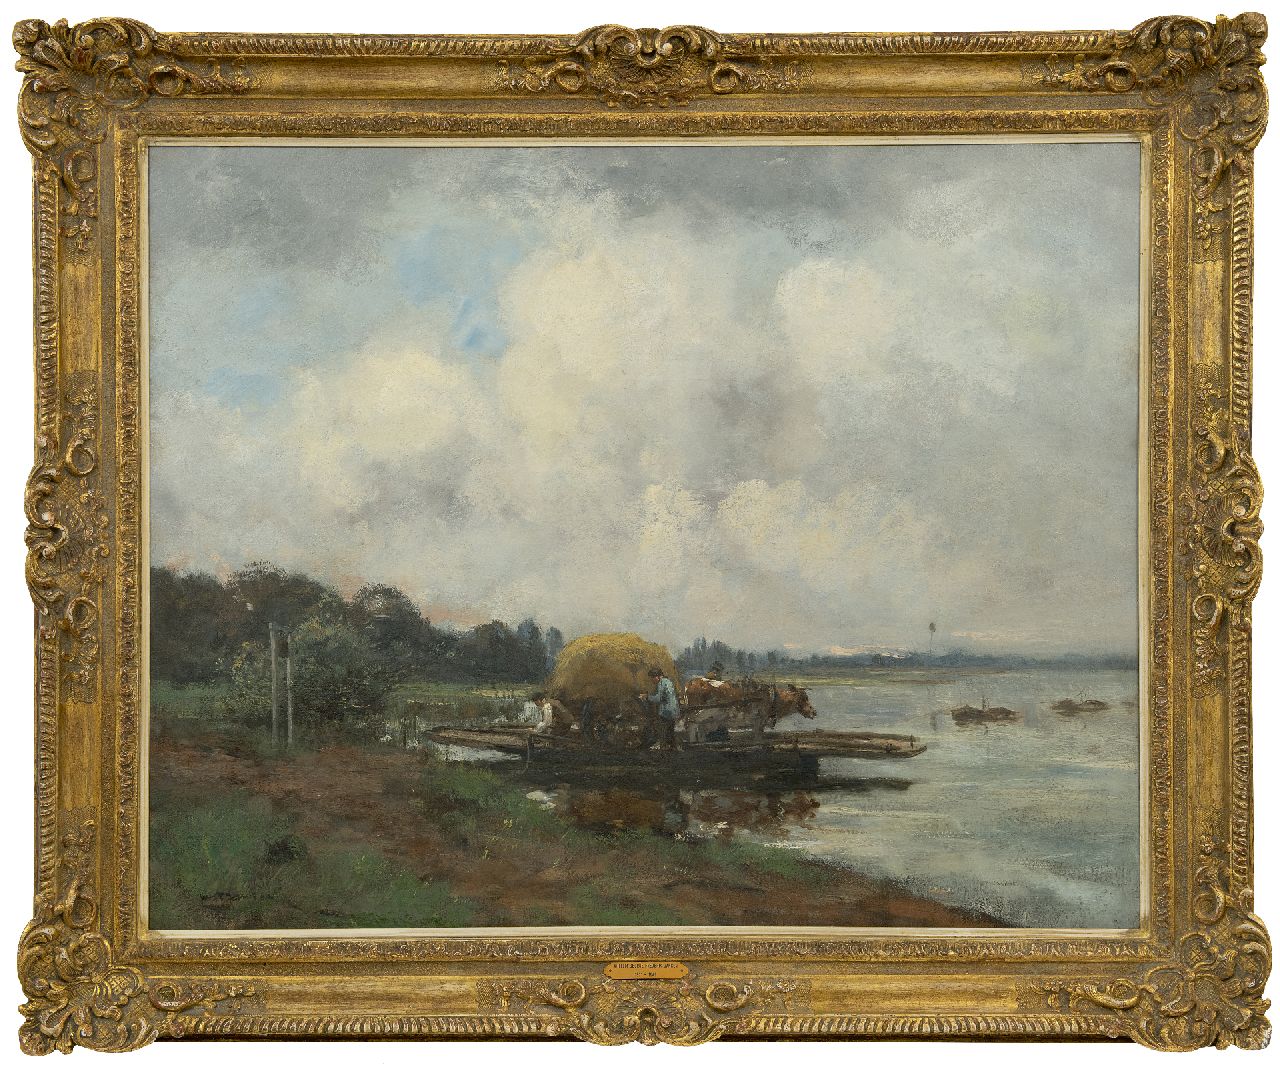 Jansen W.G.F.  | 'Willem' George Frederik Jansen | Schilderijen te koop aangeboden | De veerpont, olieverf op doek 80,8 x 101,0 cm, gesigneerd linksonder